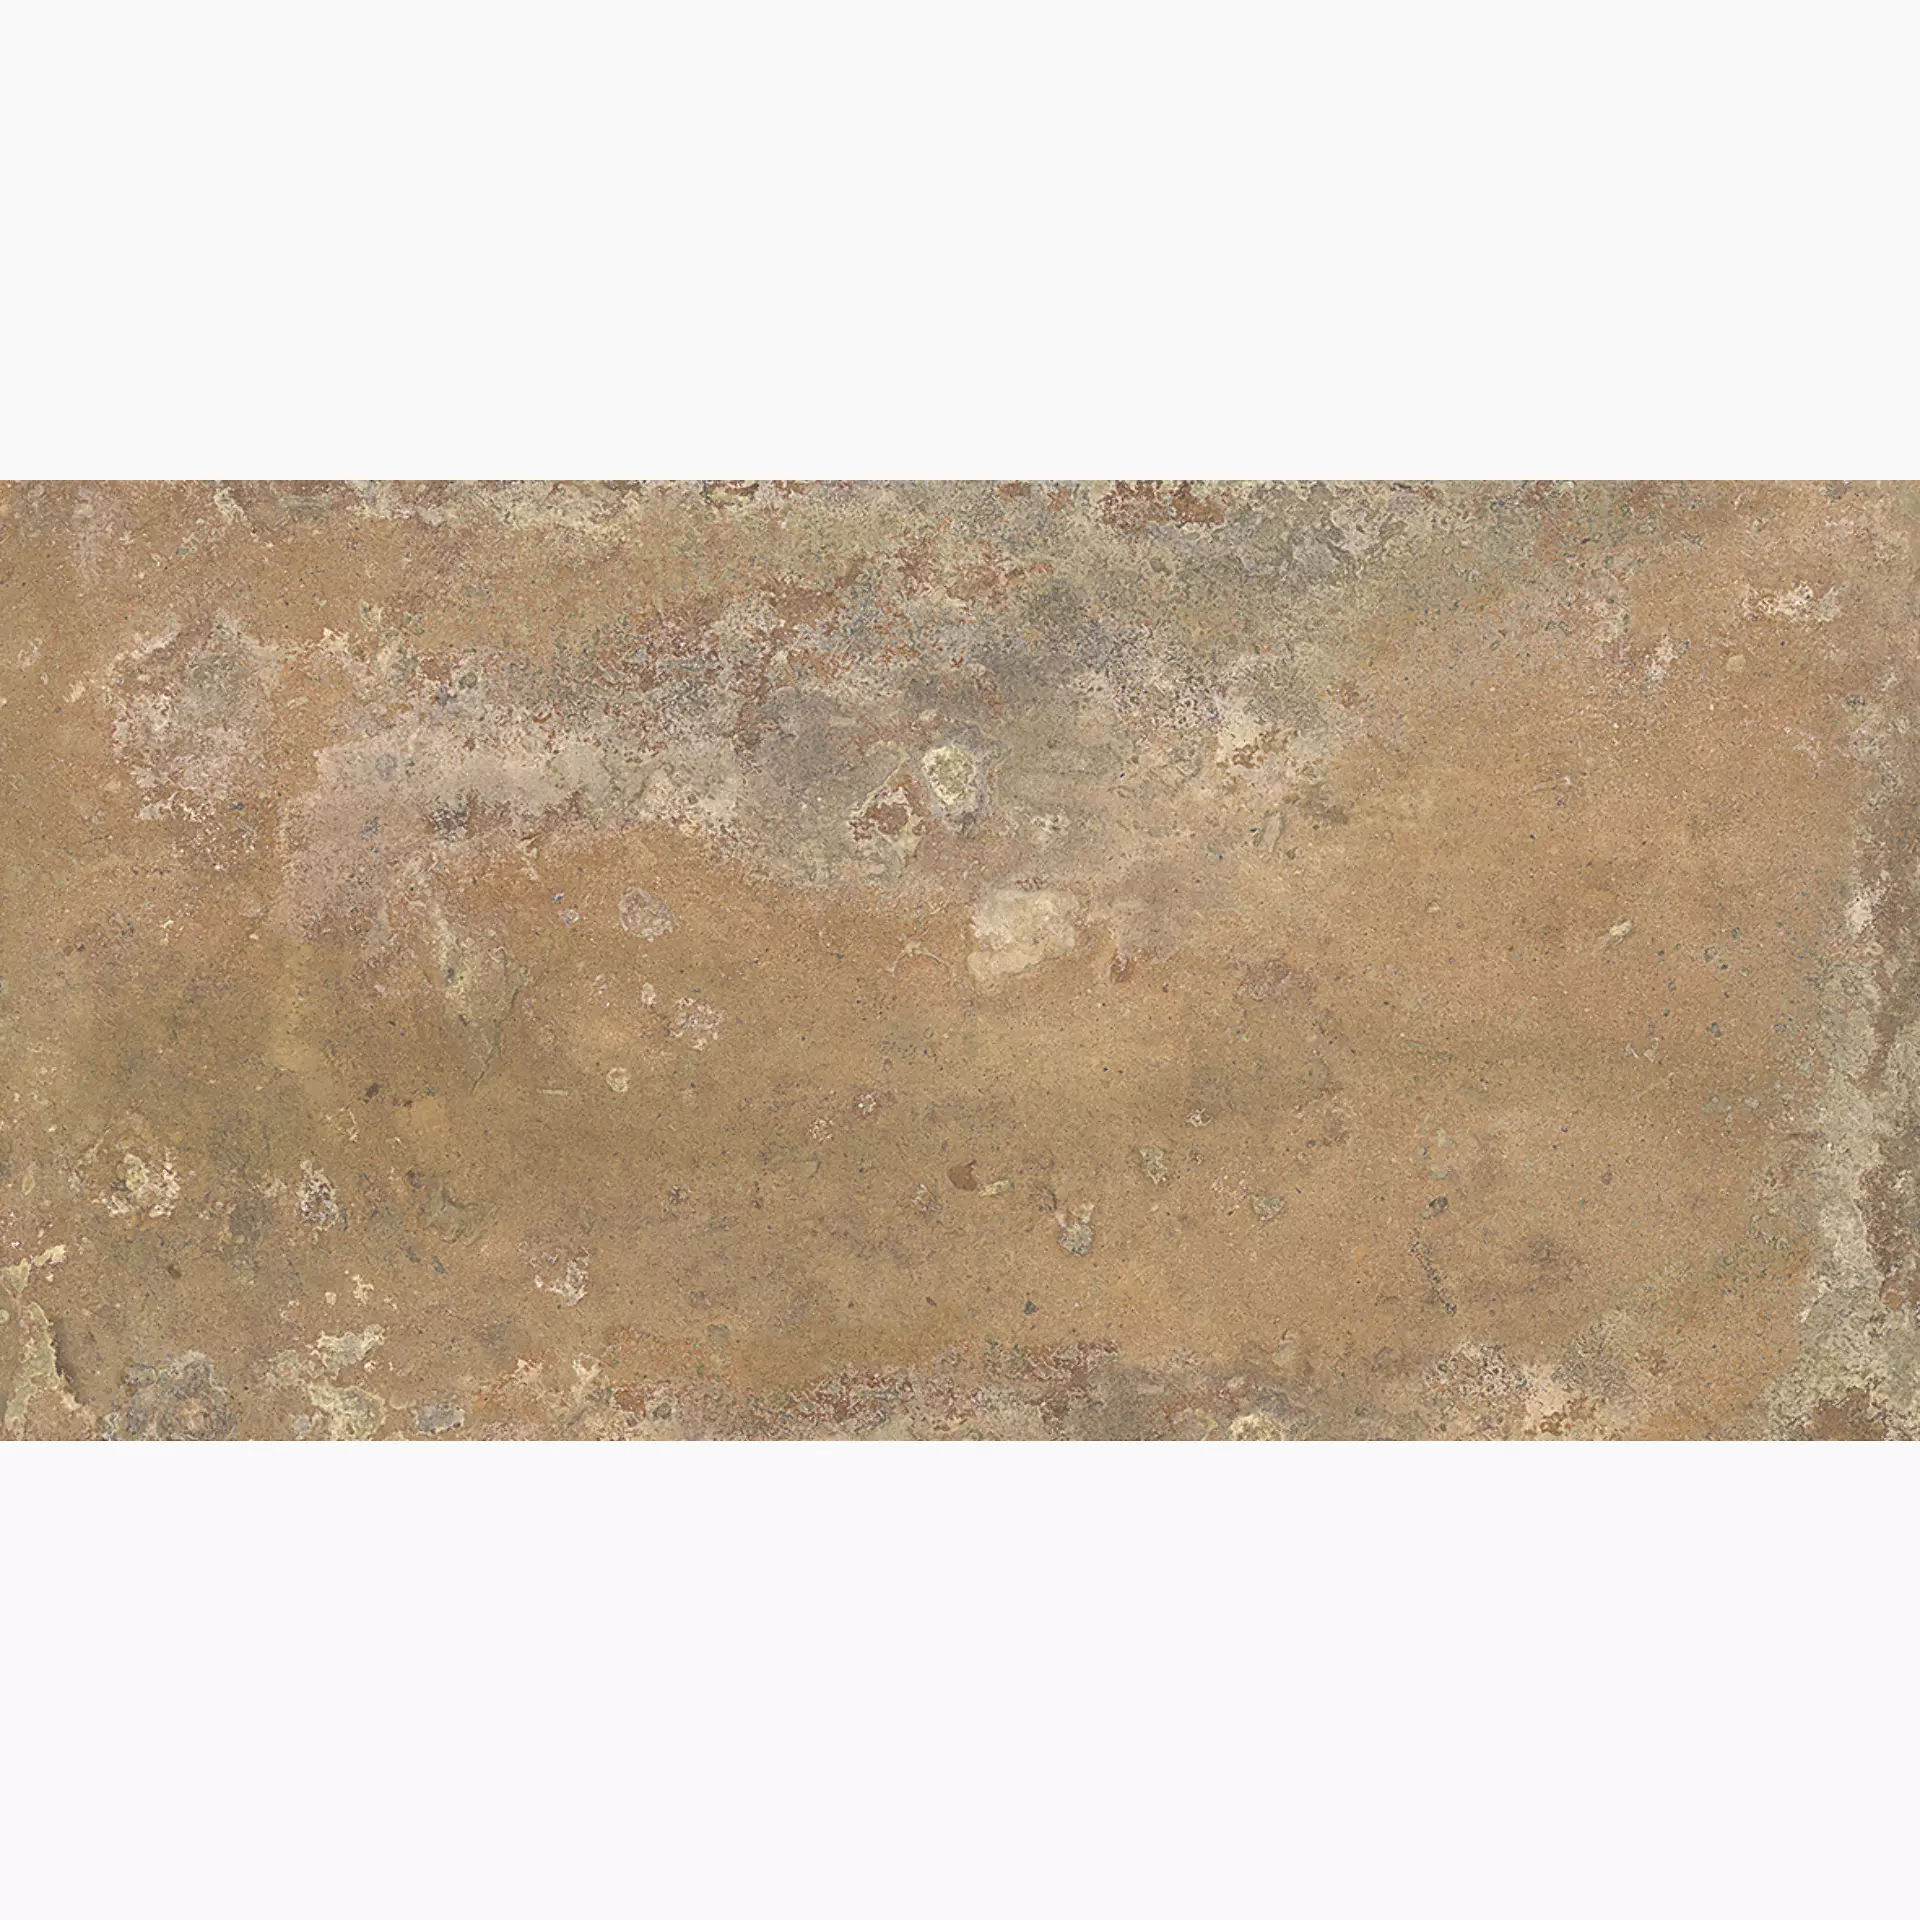 Dado Ceramica Tavellone Terre D’Umbria Outdoor TVN012 15,3x31cm 9mm